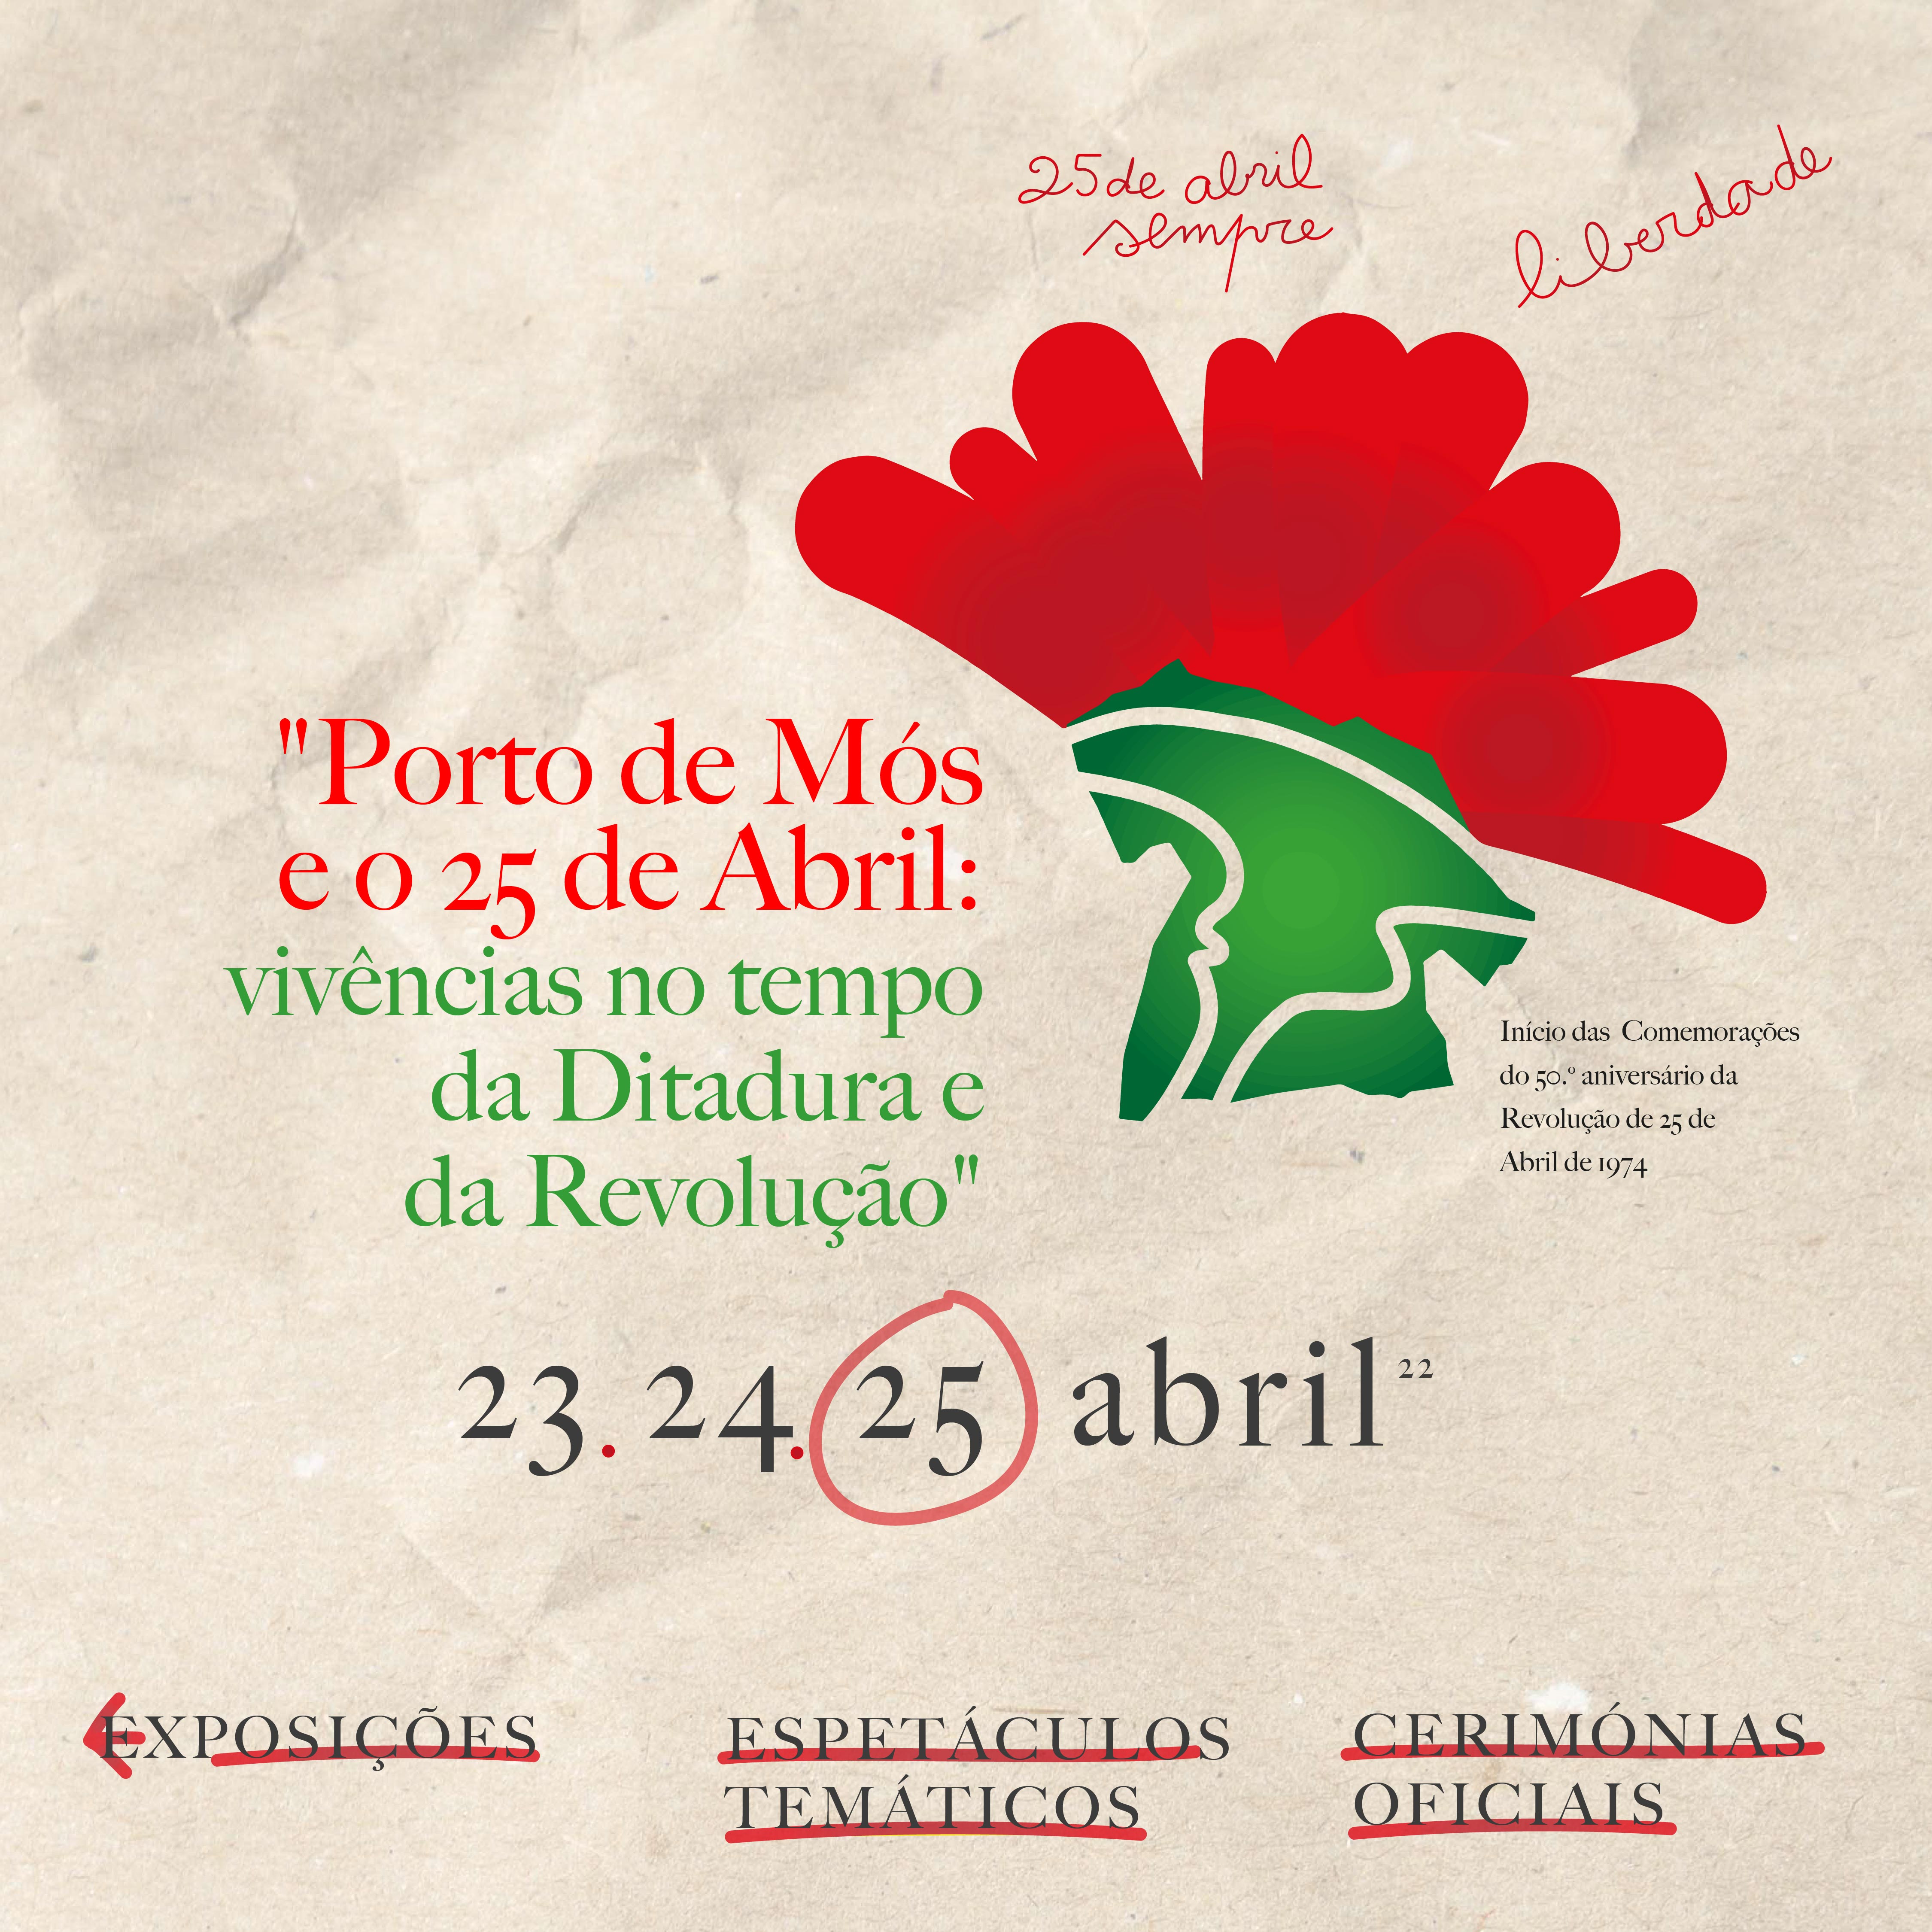 Imagem "Porto de Mós e o 25 de abril: vivências no tempo da Ditadura e da Revolução"